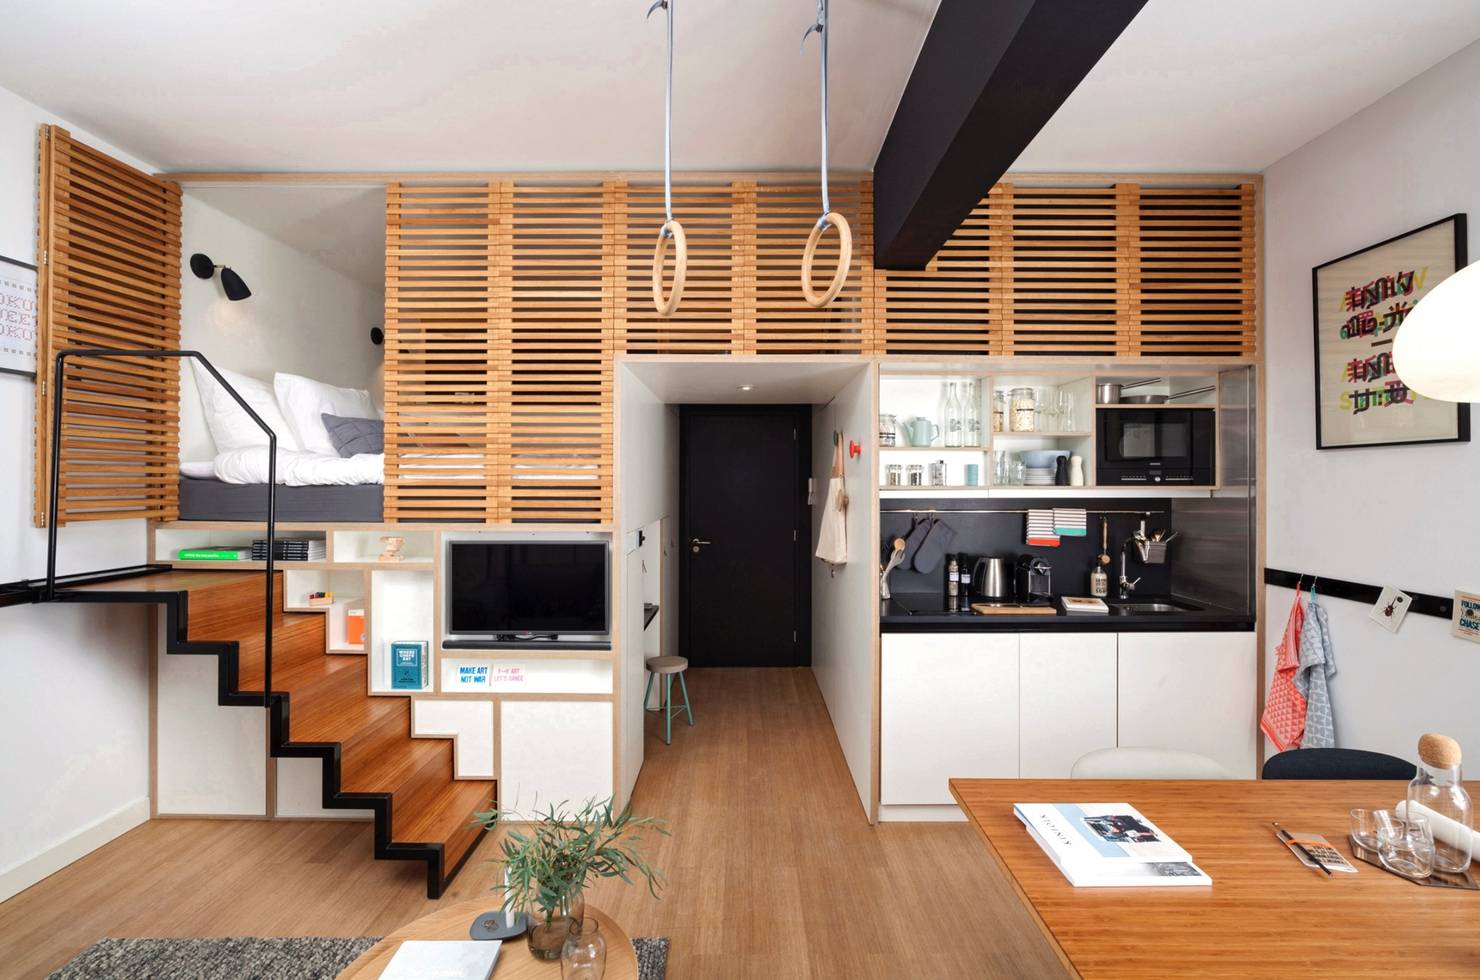 Кухня-студия — обзор лучших идей планировки и зонирования пространства в кухне. 135 фото новинок дизайна и оформления кухни-студии